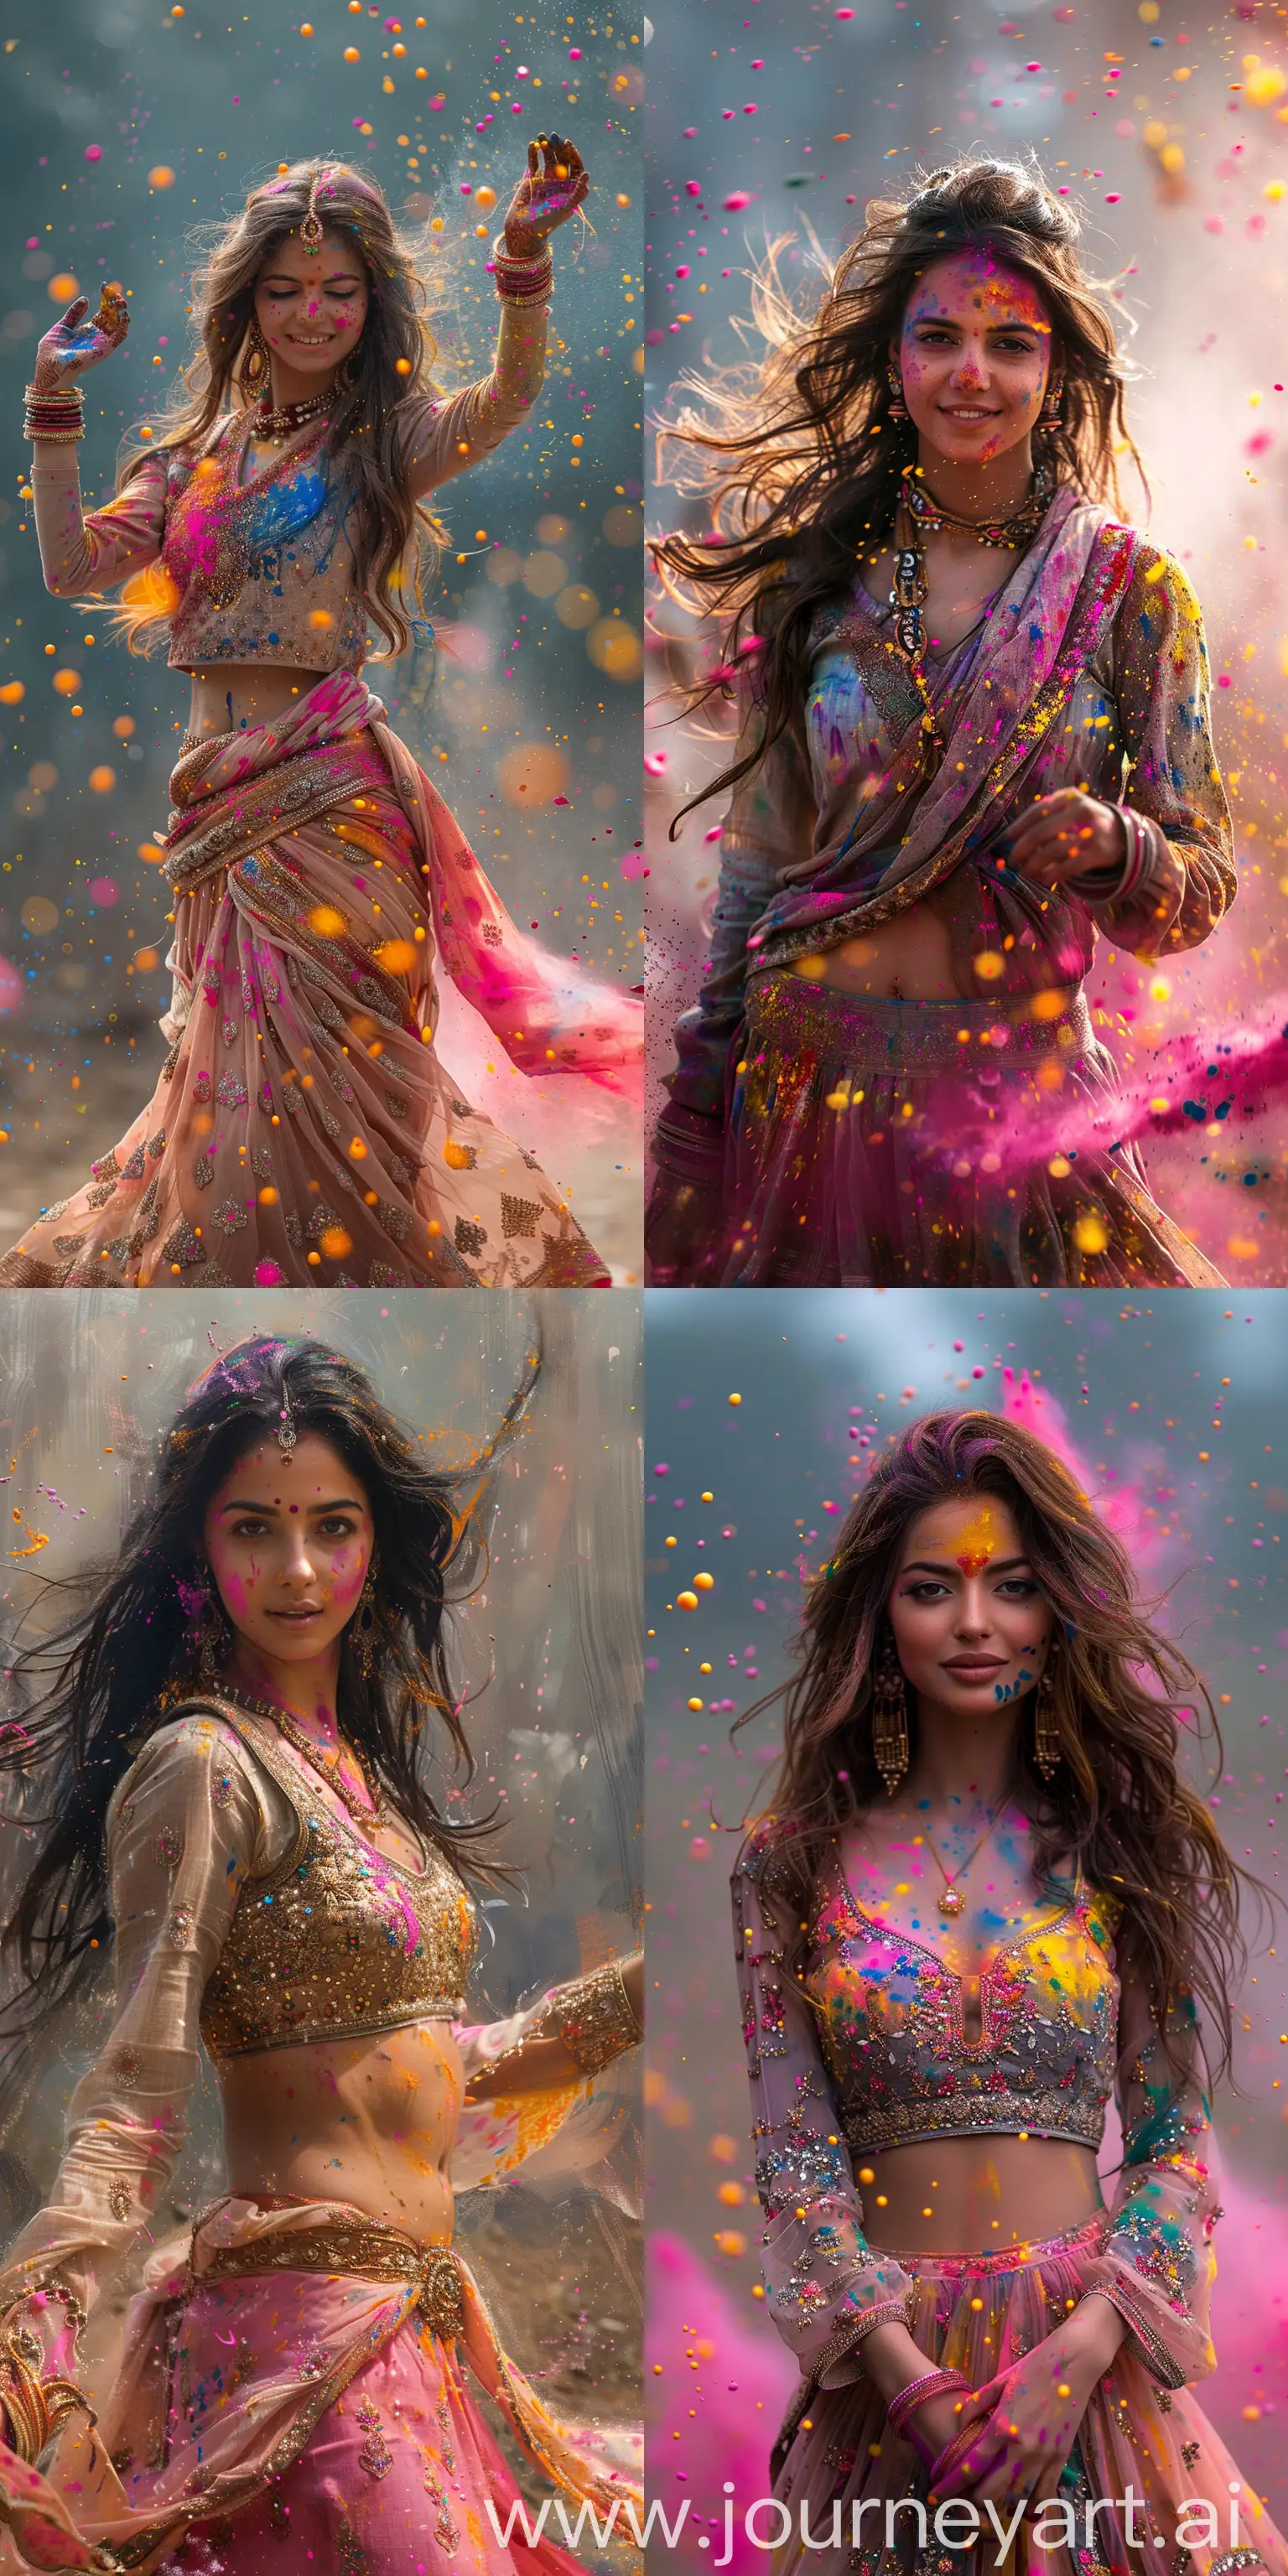 Punjabi-Woman-Dancing-in-Vibrant-Holi-Colors